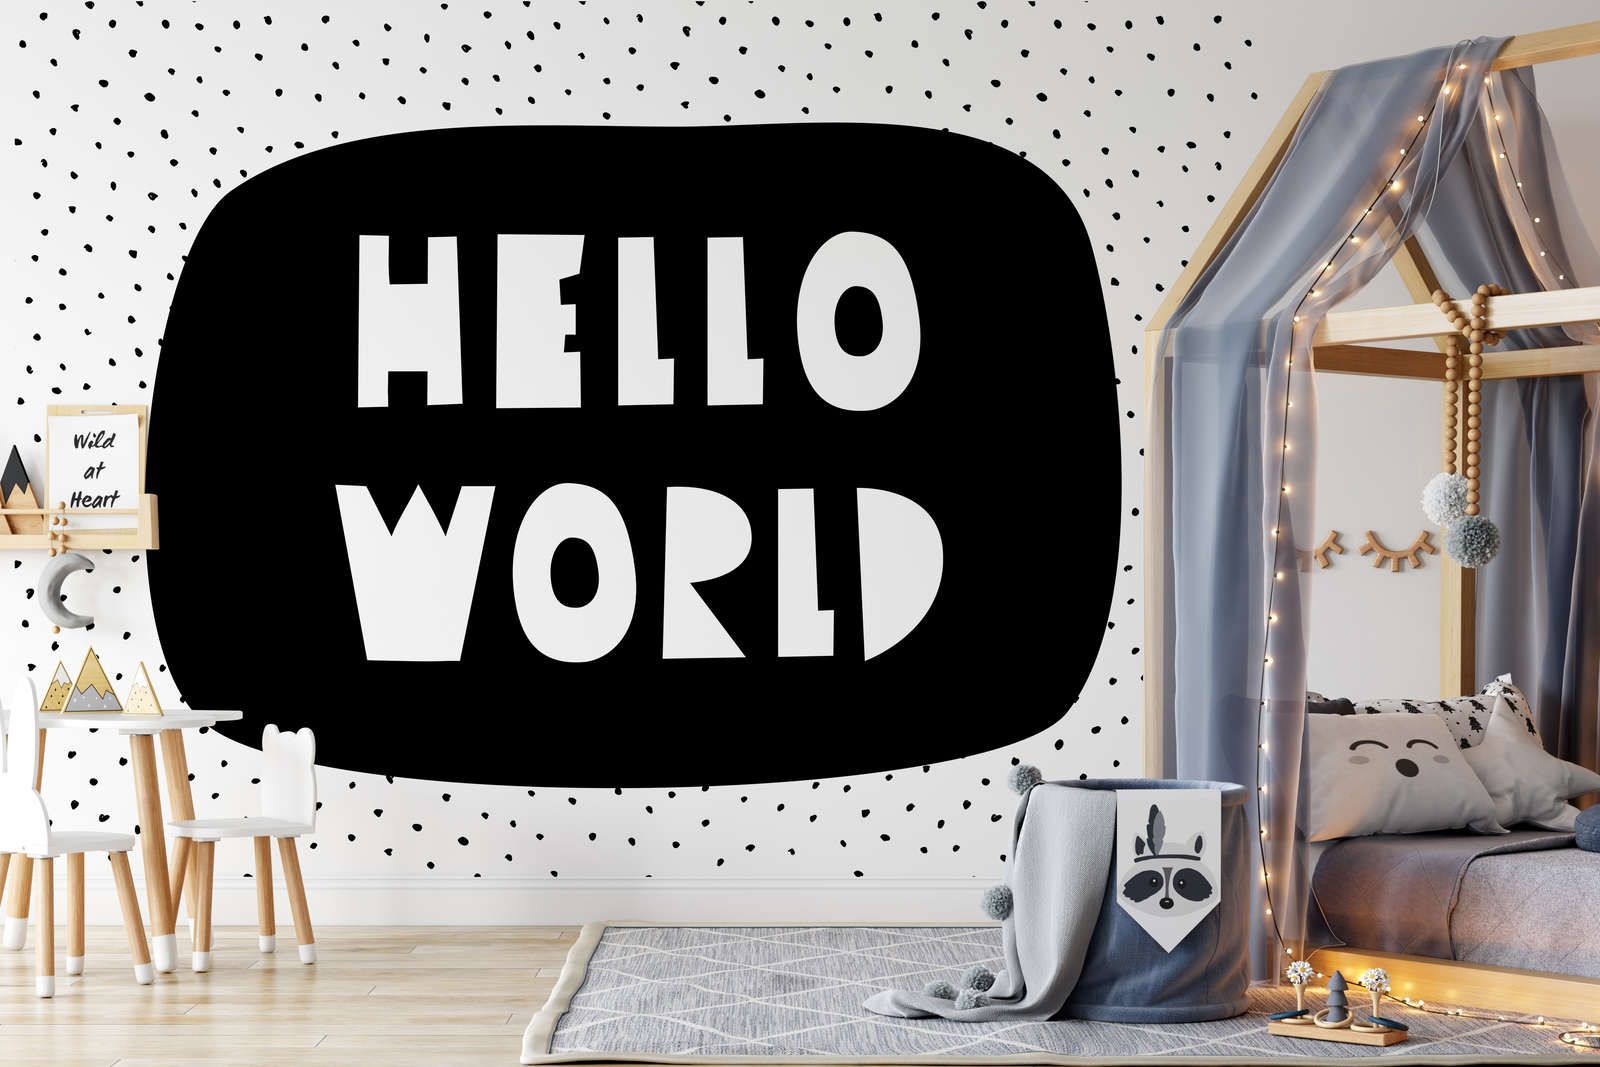             Digital behang voor kinderkamer met opschrift "Hello World" - Glad & parelmoervlies
        